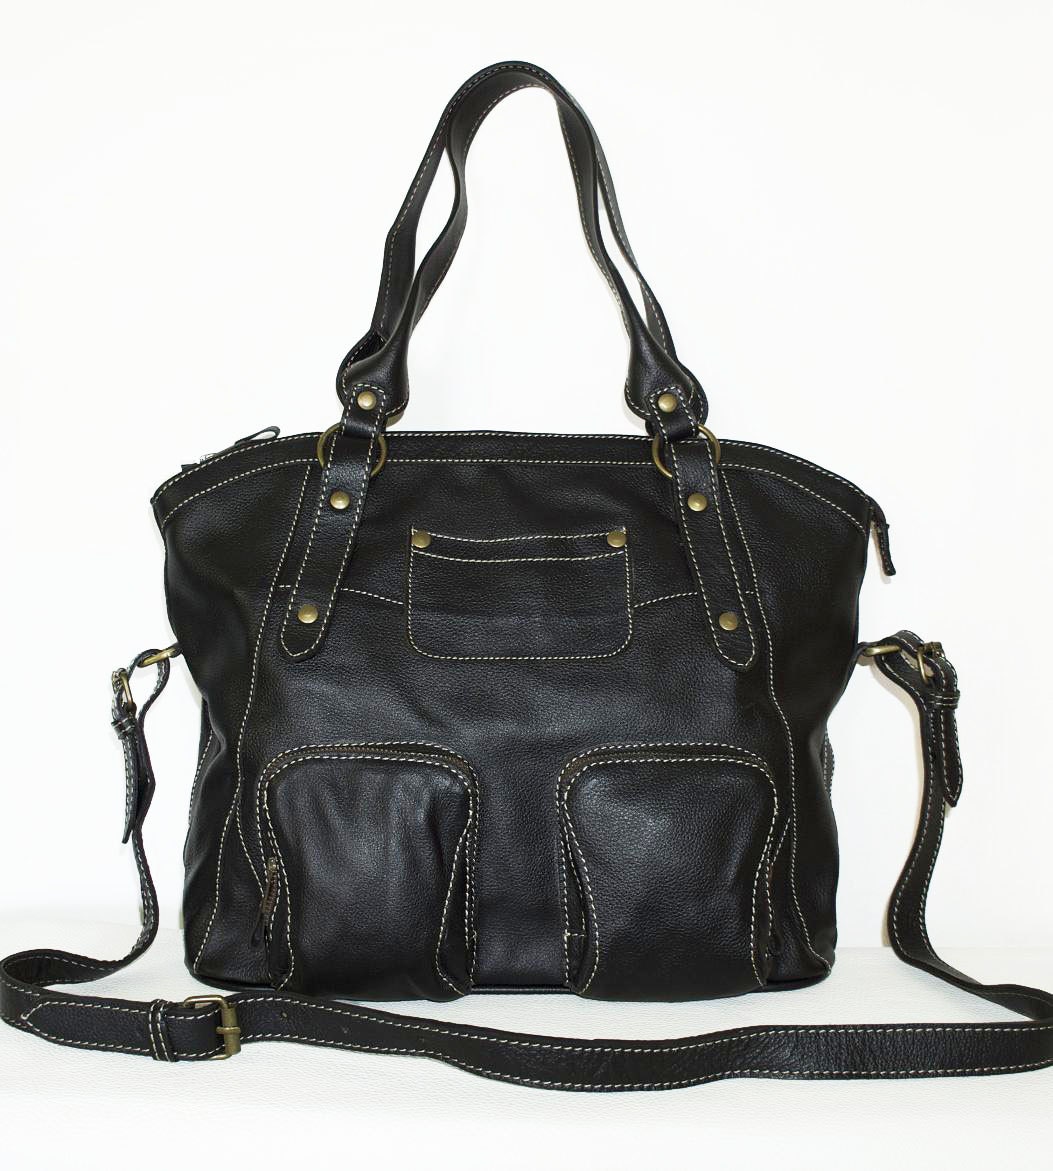 Black Leather Tote / Handbag / Shoulder / Crossbody Bag